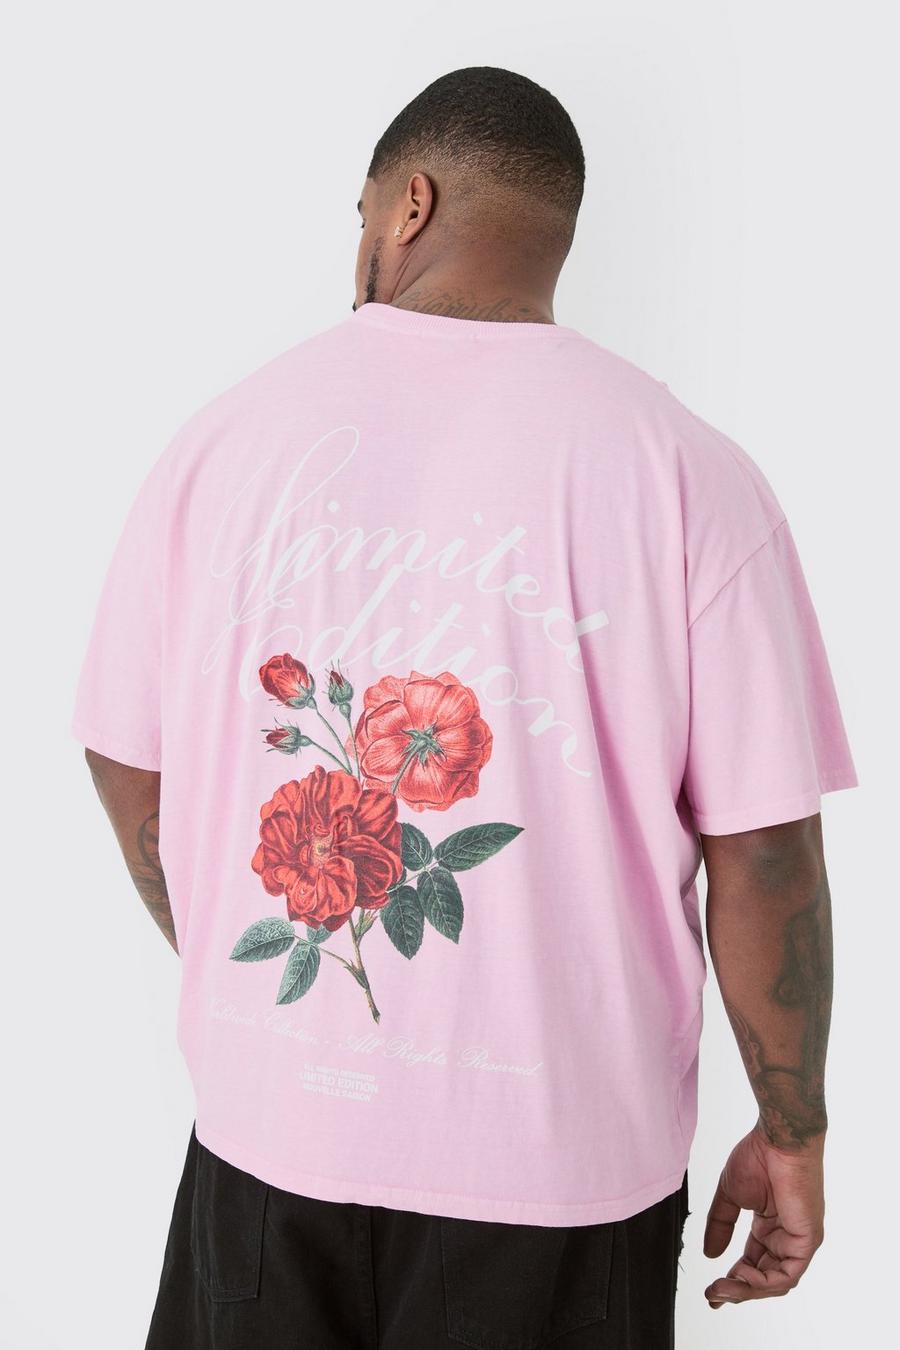 Camiseta Plus rosa con estampado gráfico de flores Lmtd Edition, Pink image number 1